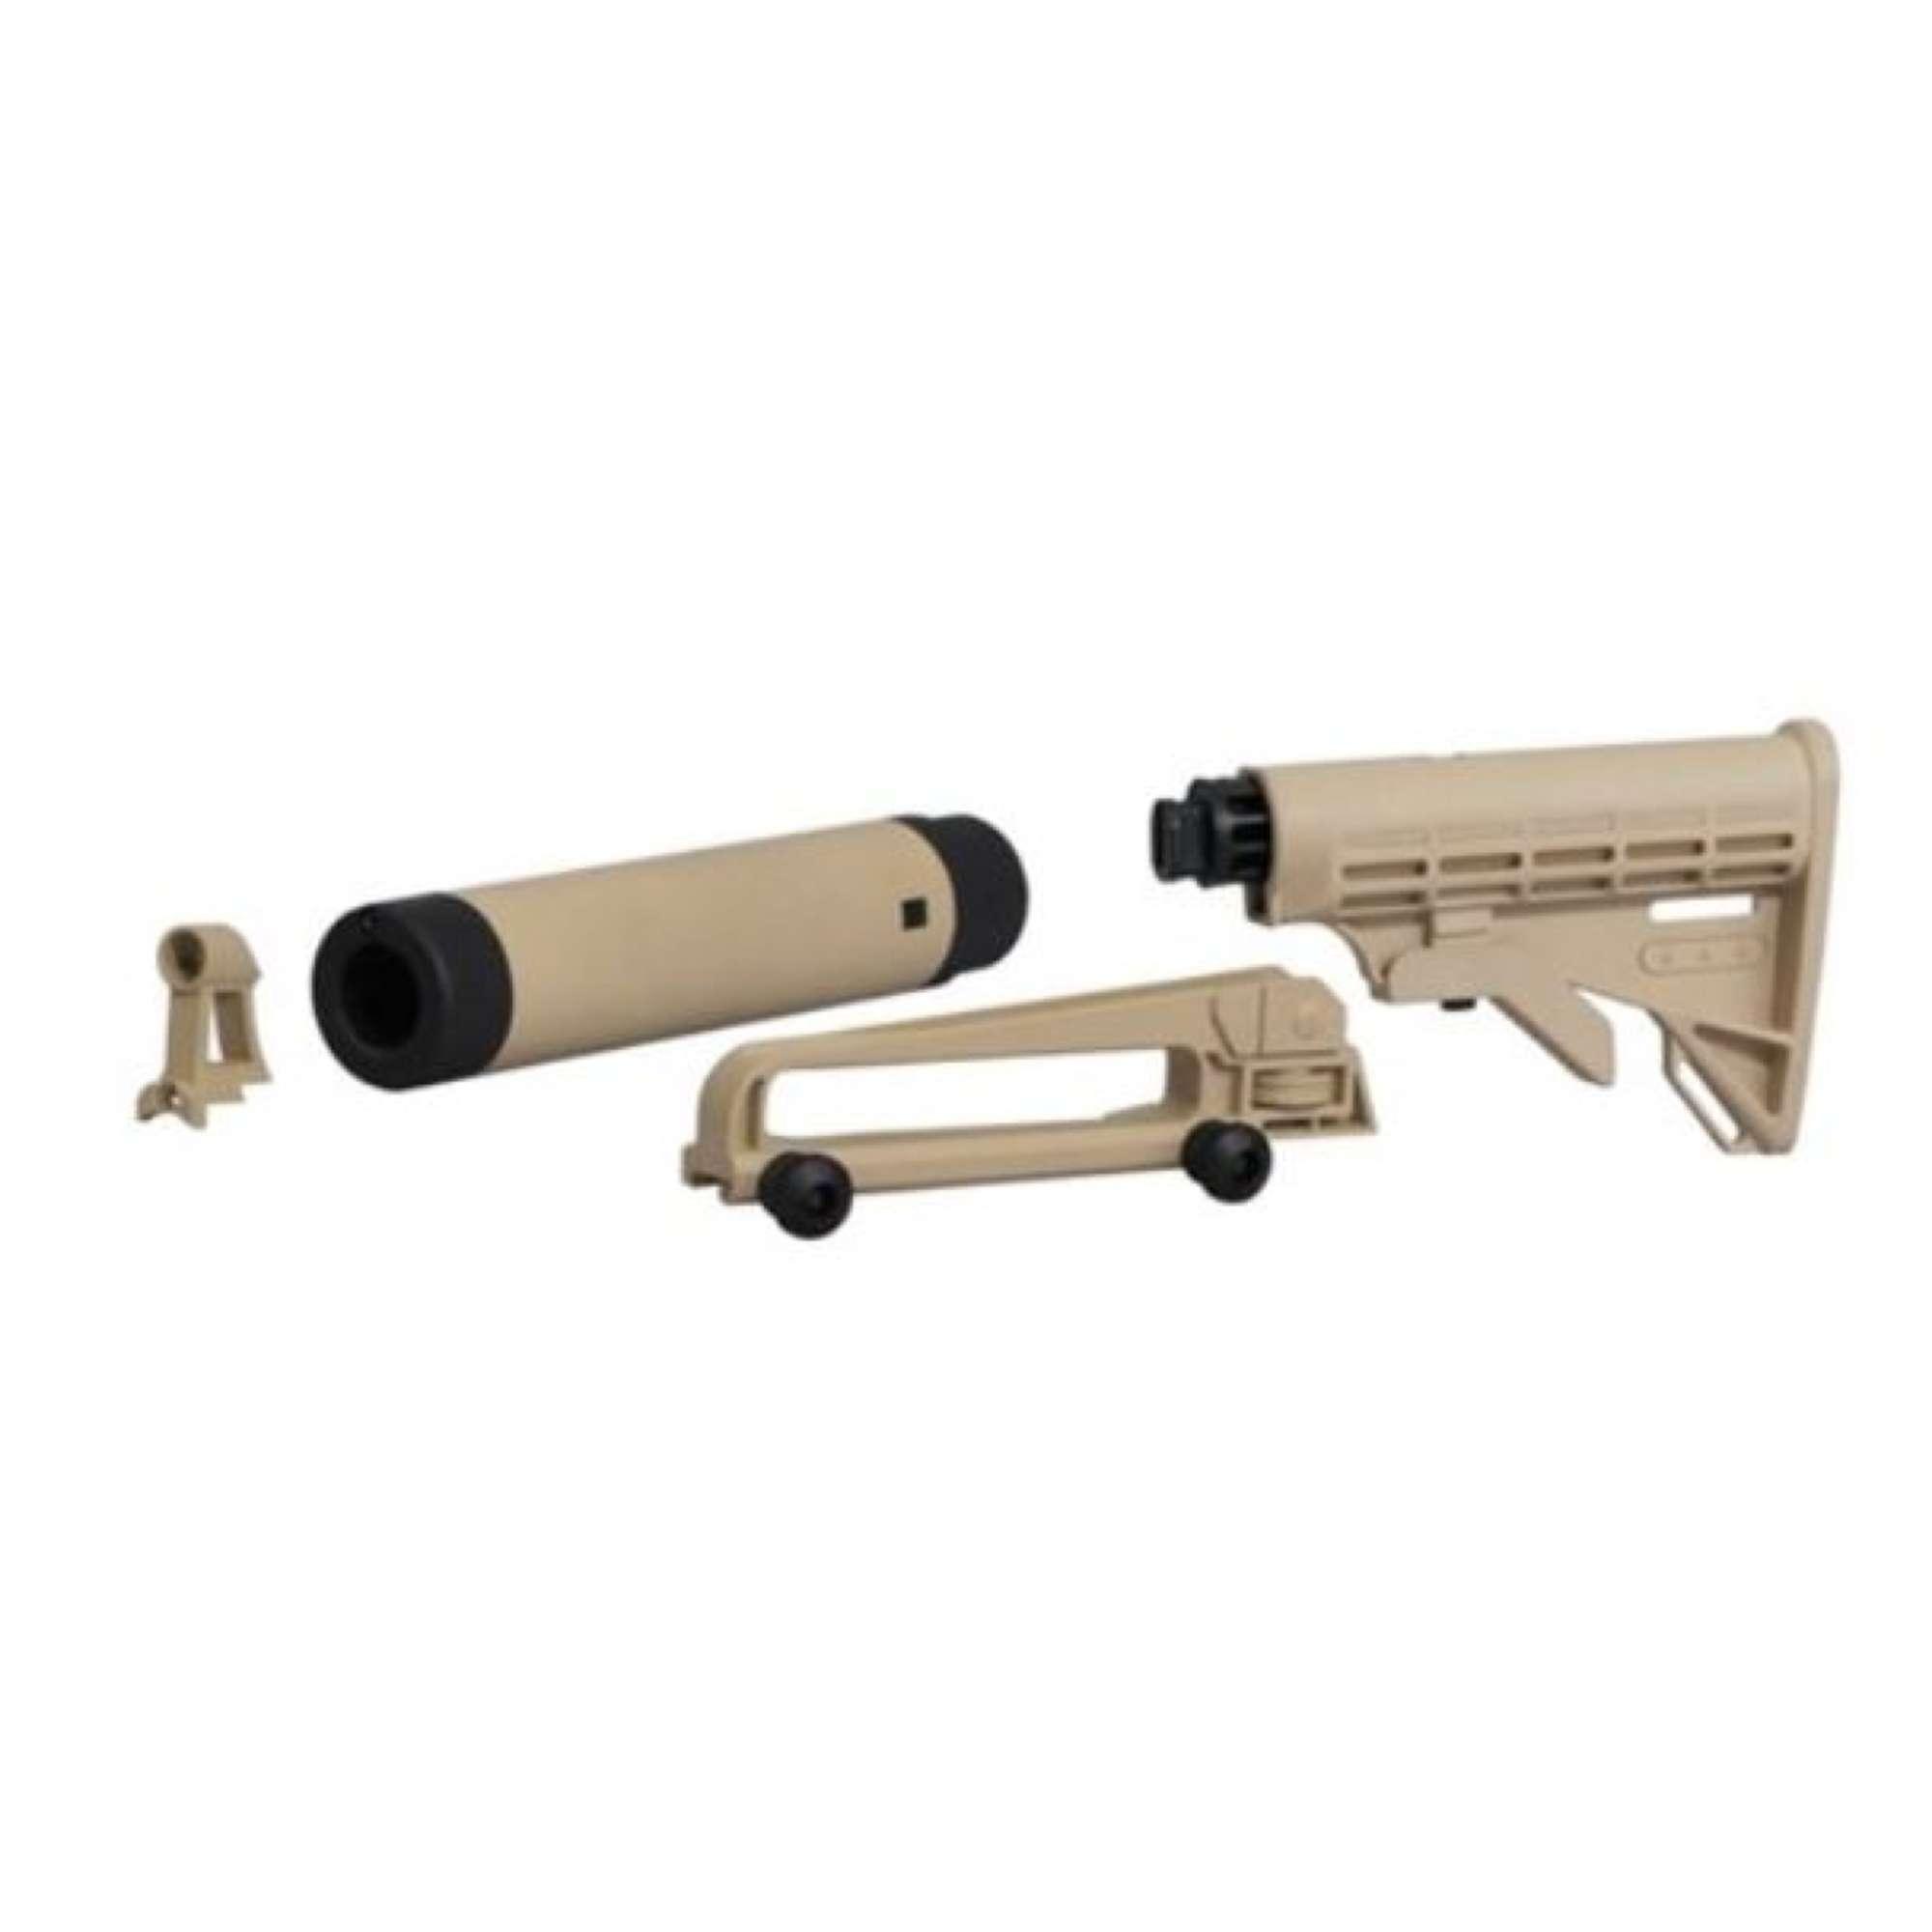 Tippmann Cronus Paintball Gun Stock Conversion Kit